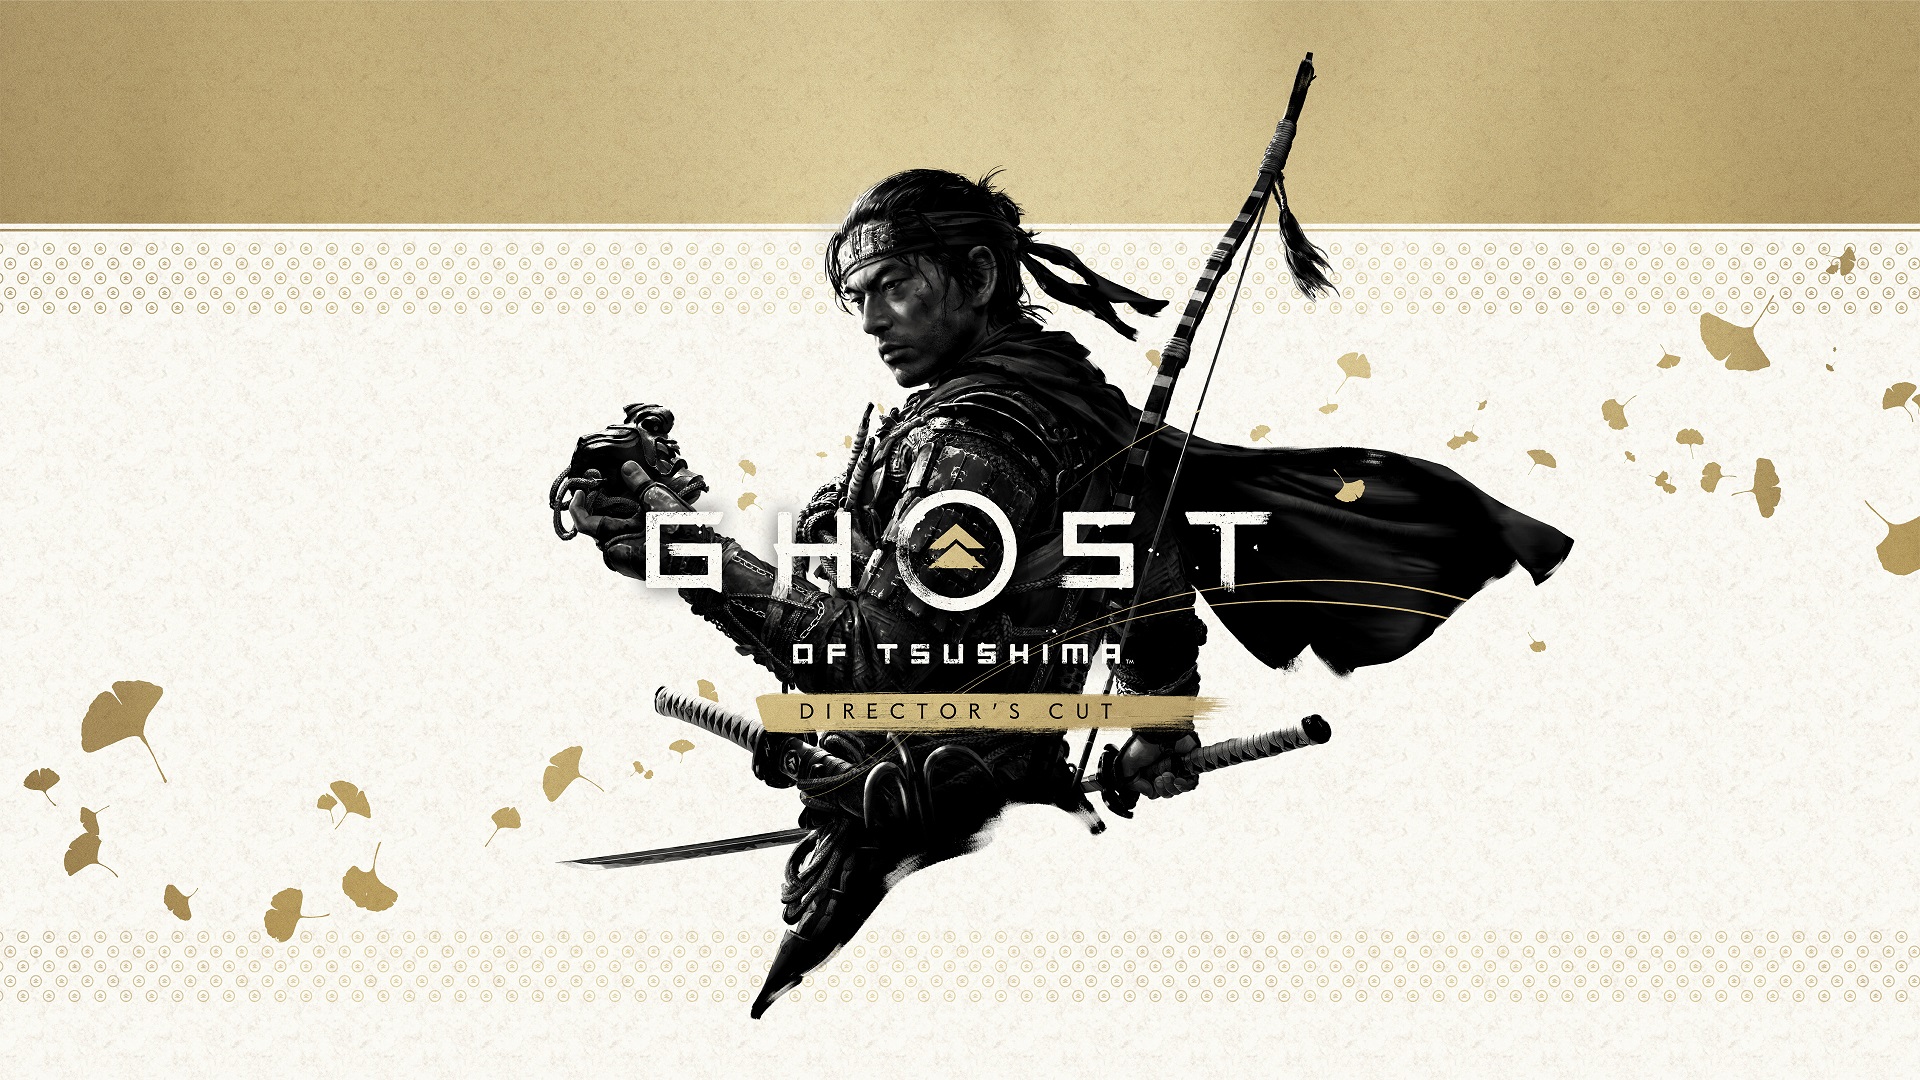 بازی Ghost of Tsushima Director’s Cut برای کامپیوتر معرفی شد